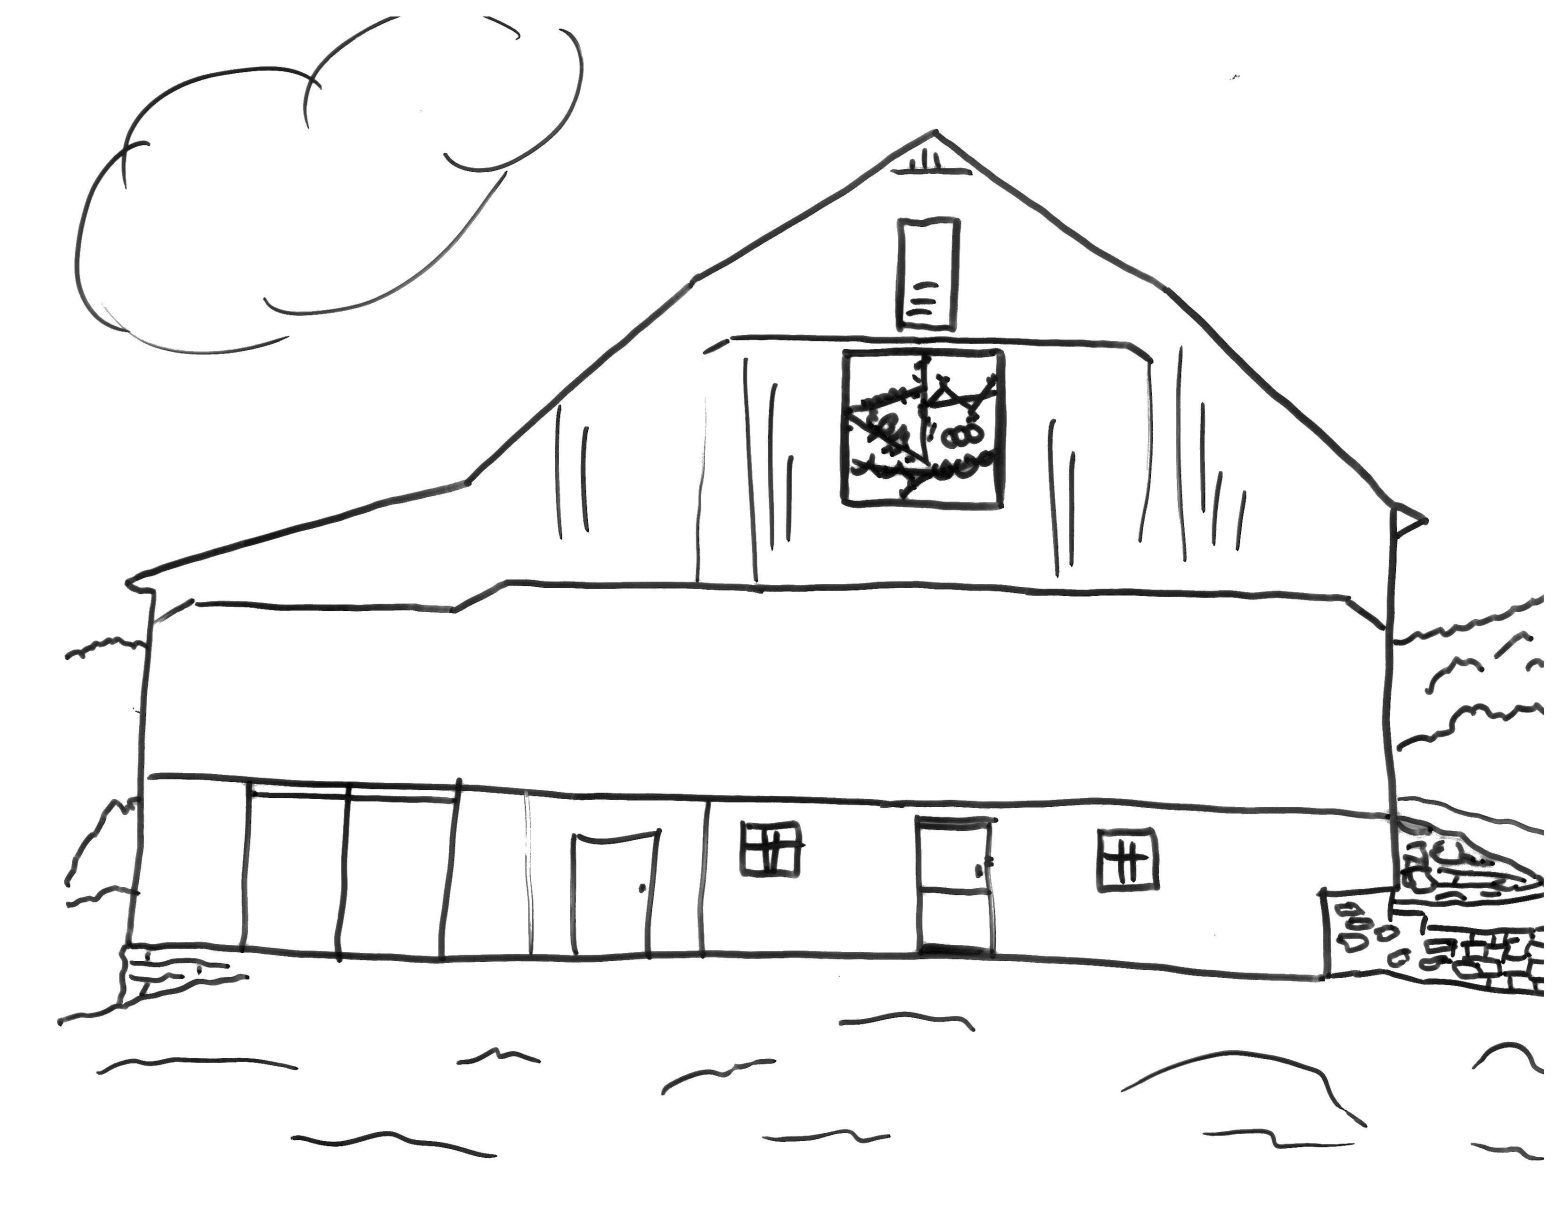 Раскрашенная картинка фермы с домом (дом)